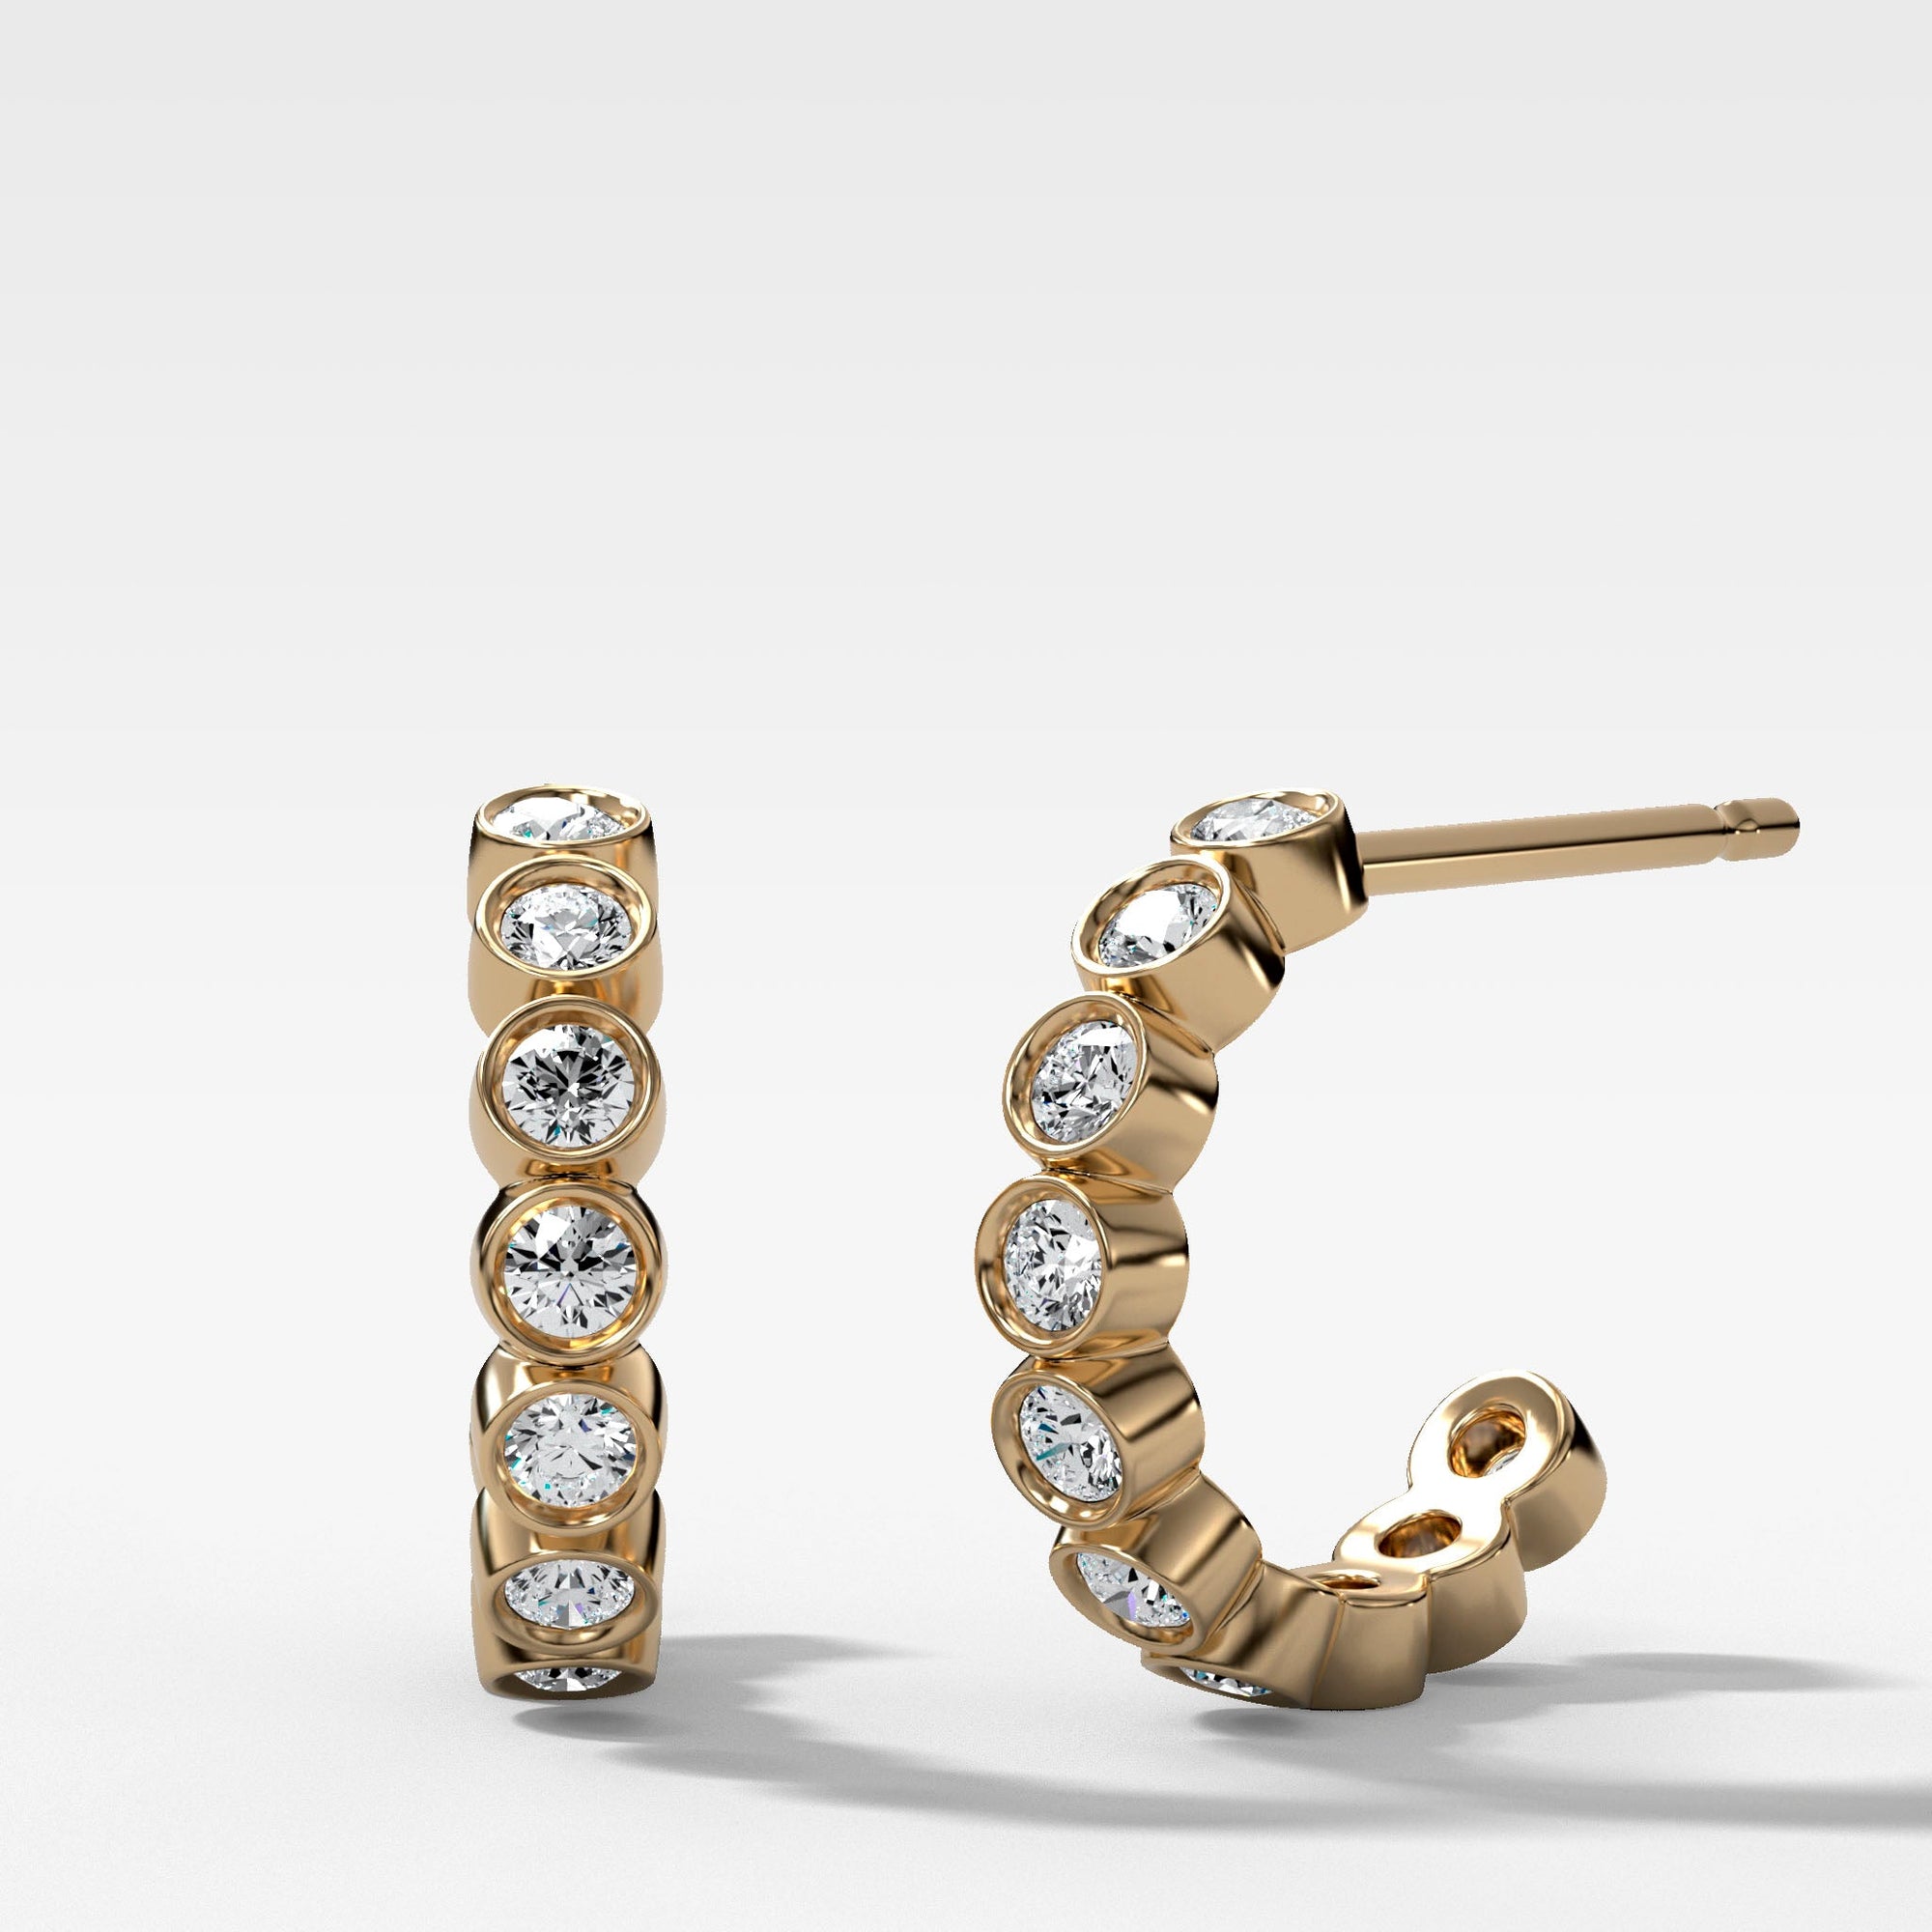 Bezel Set Diamond Earrings in Yellow Gold by Good Stone